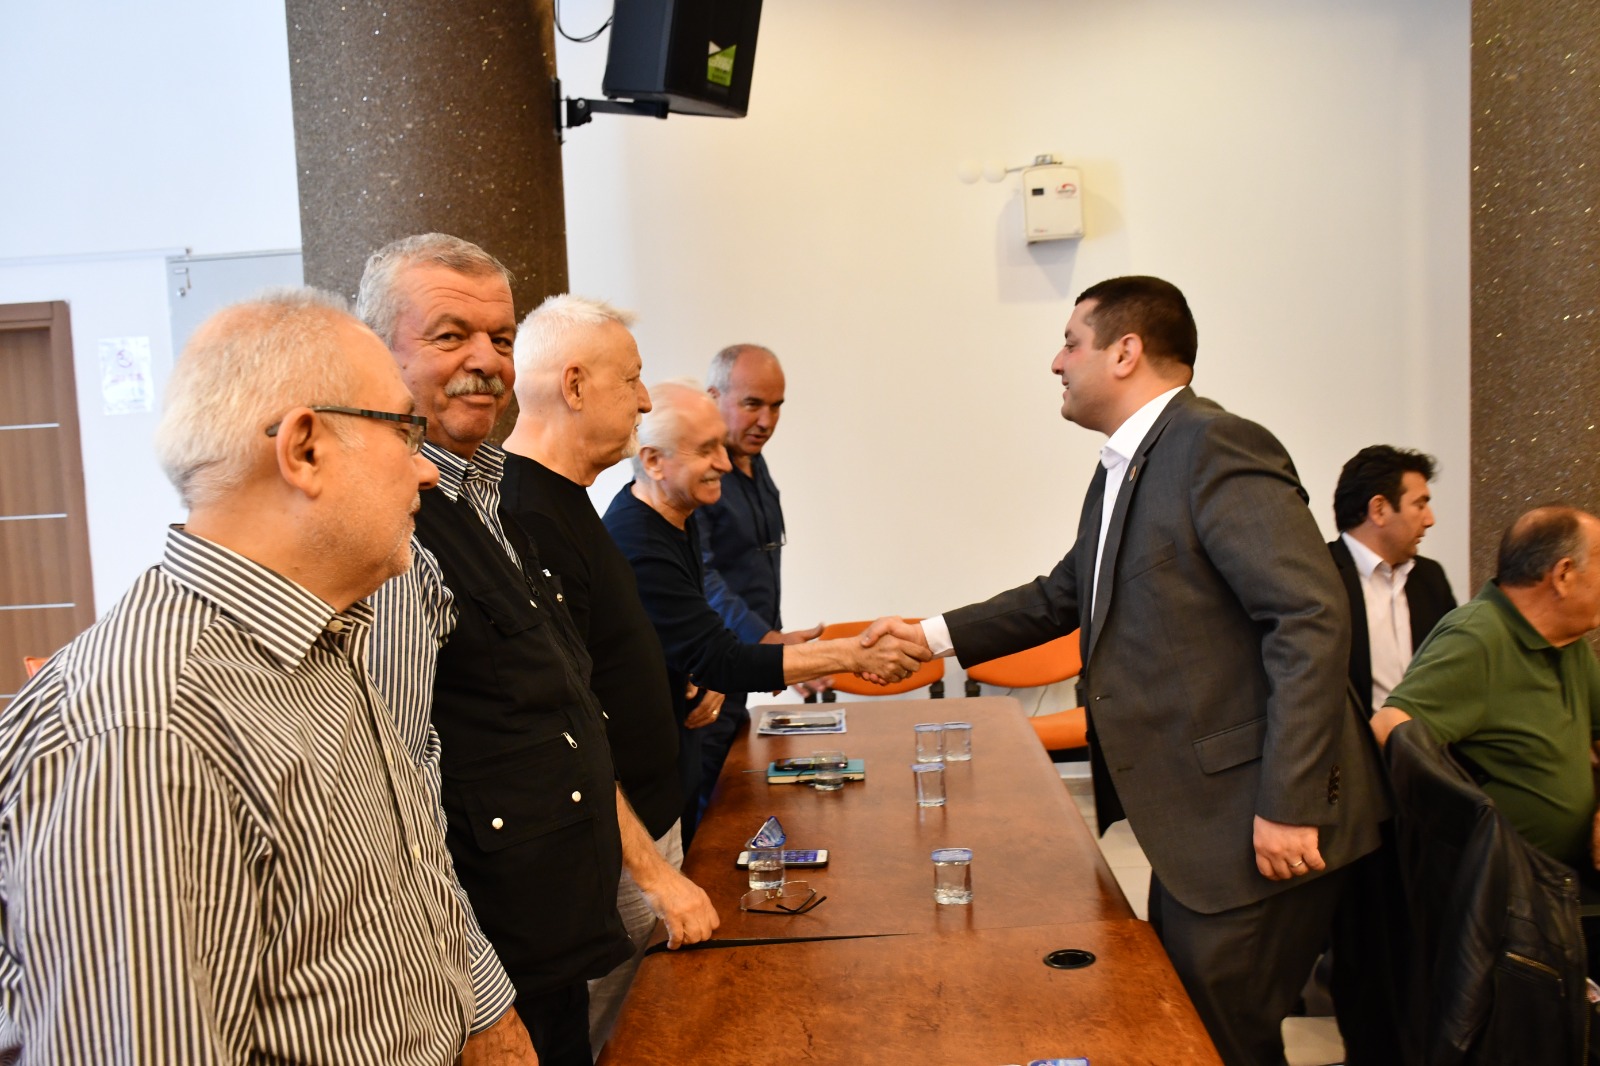 Torbalı Belediyesi Torbalı Belediye Başkanı Övünç Demir, dün mahalle muhtarları ile bir araya geldi. Başkan Demir, 31 Mart yerel seçimler sonrasında göreve yeni başlayan ve güven tazeleyen muhtarları tebrik ederek başarılar diledi.